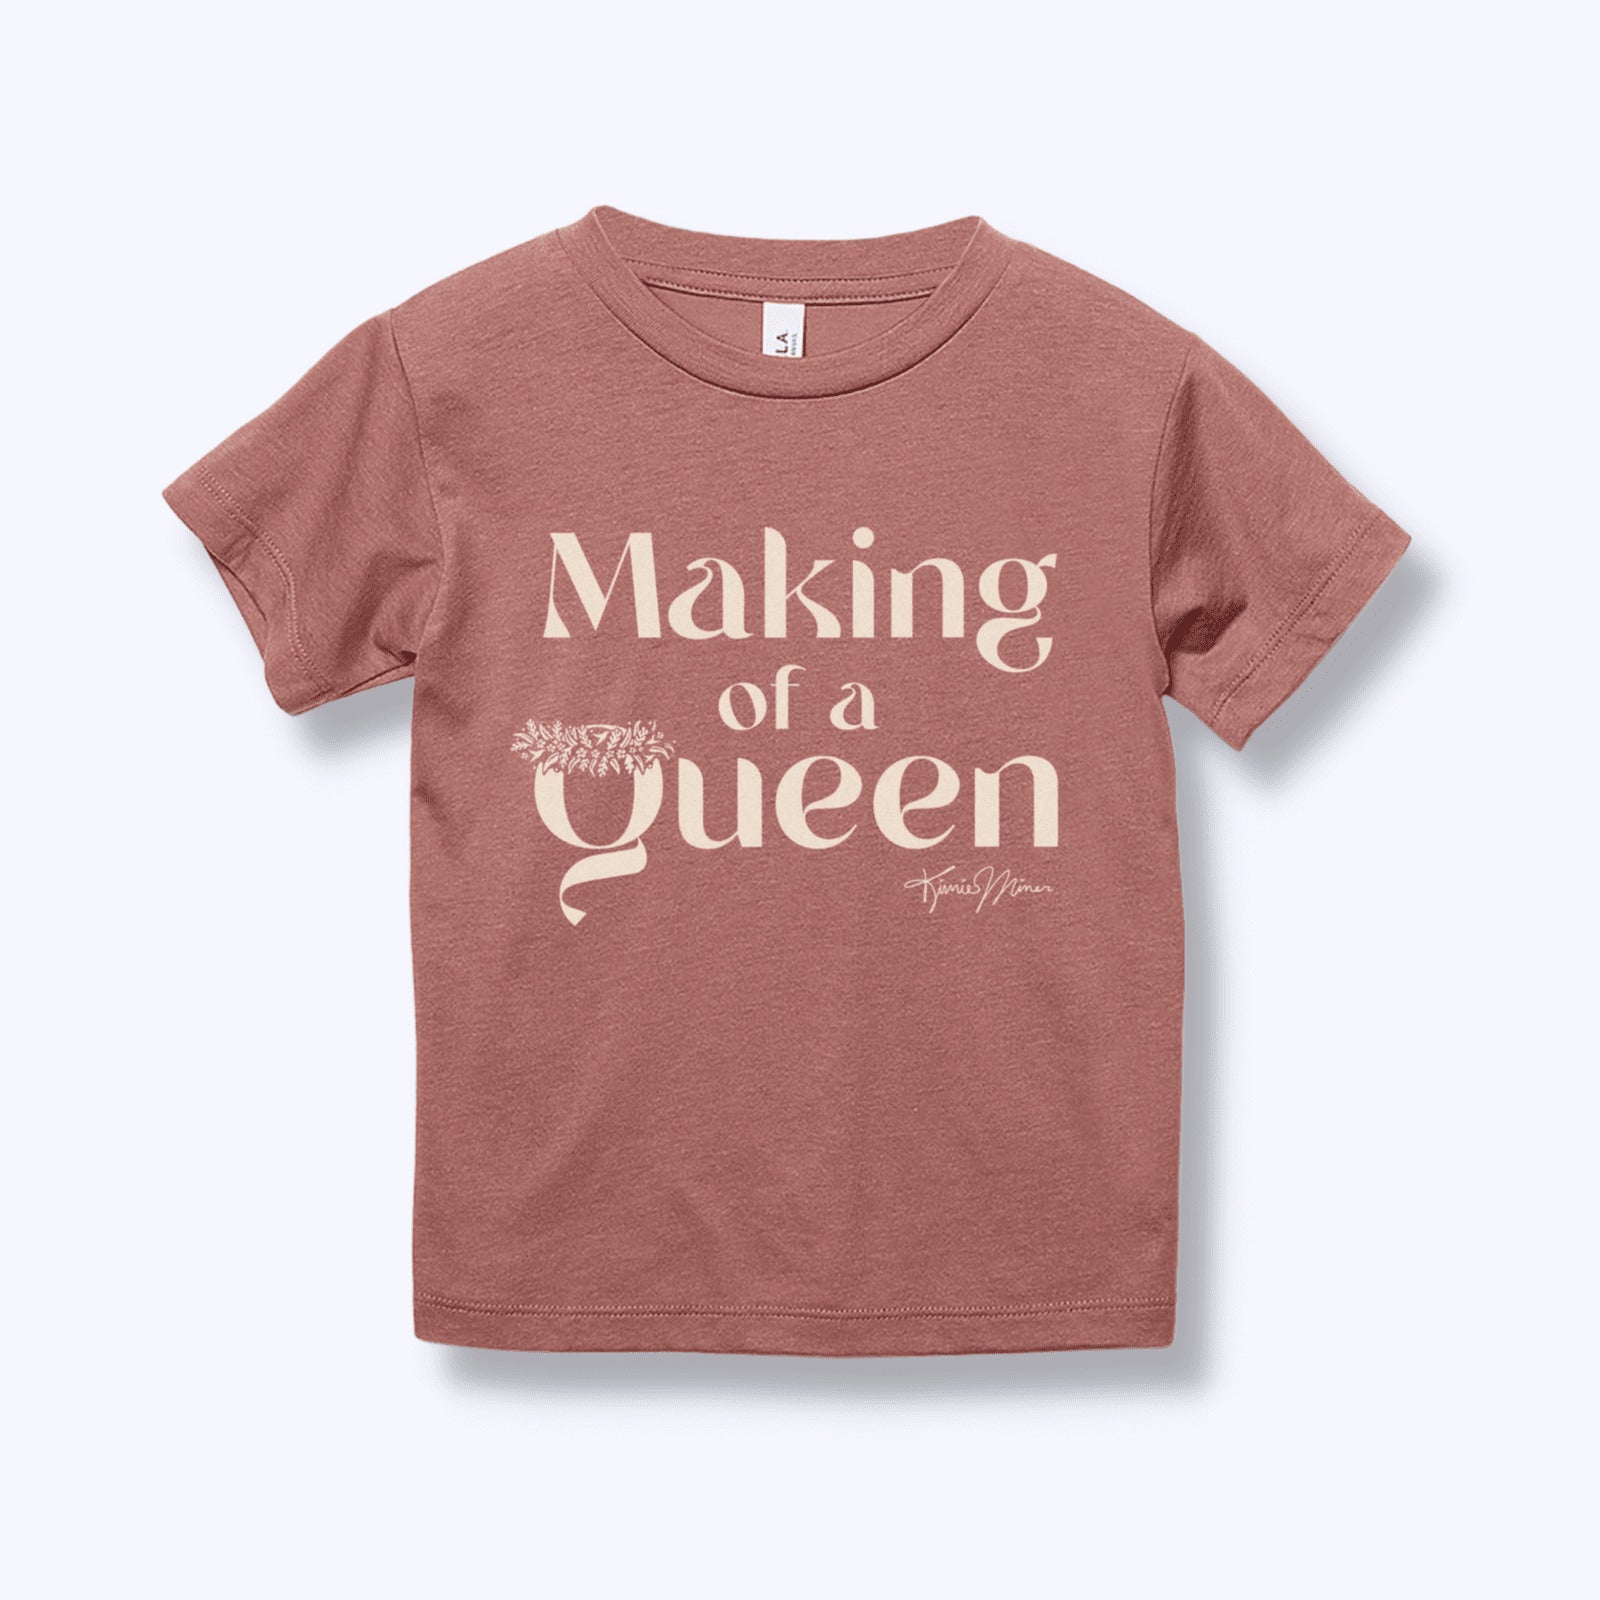 Pop-Up Mākeke - Haku Collective - Making Of A Queen Keiki Short Sleeve T-Shirt